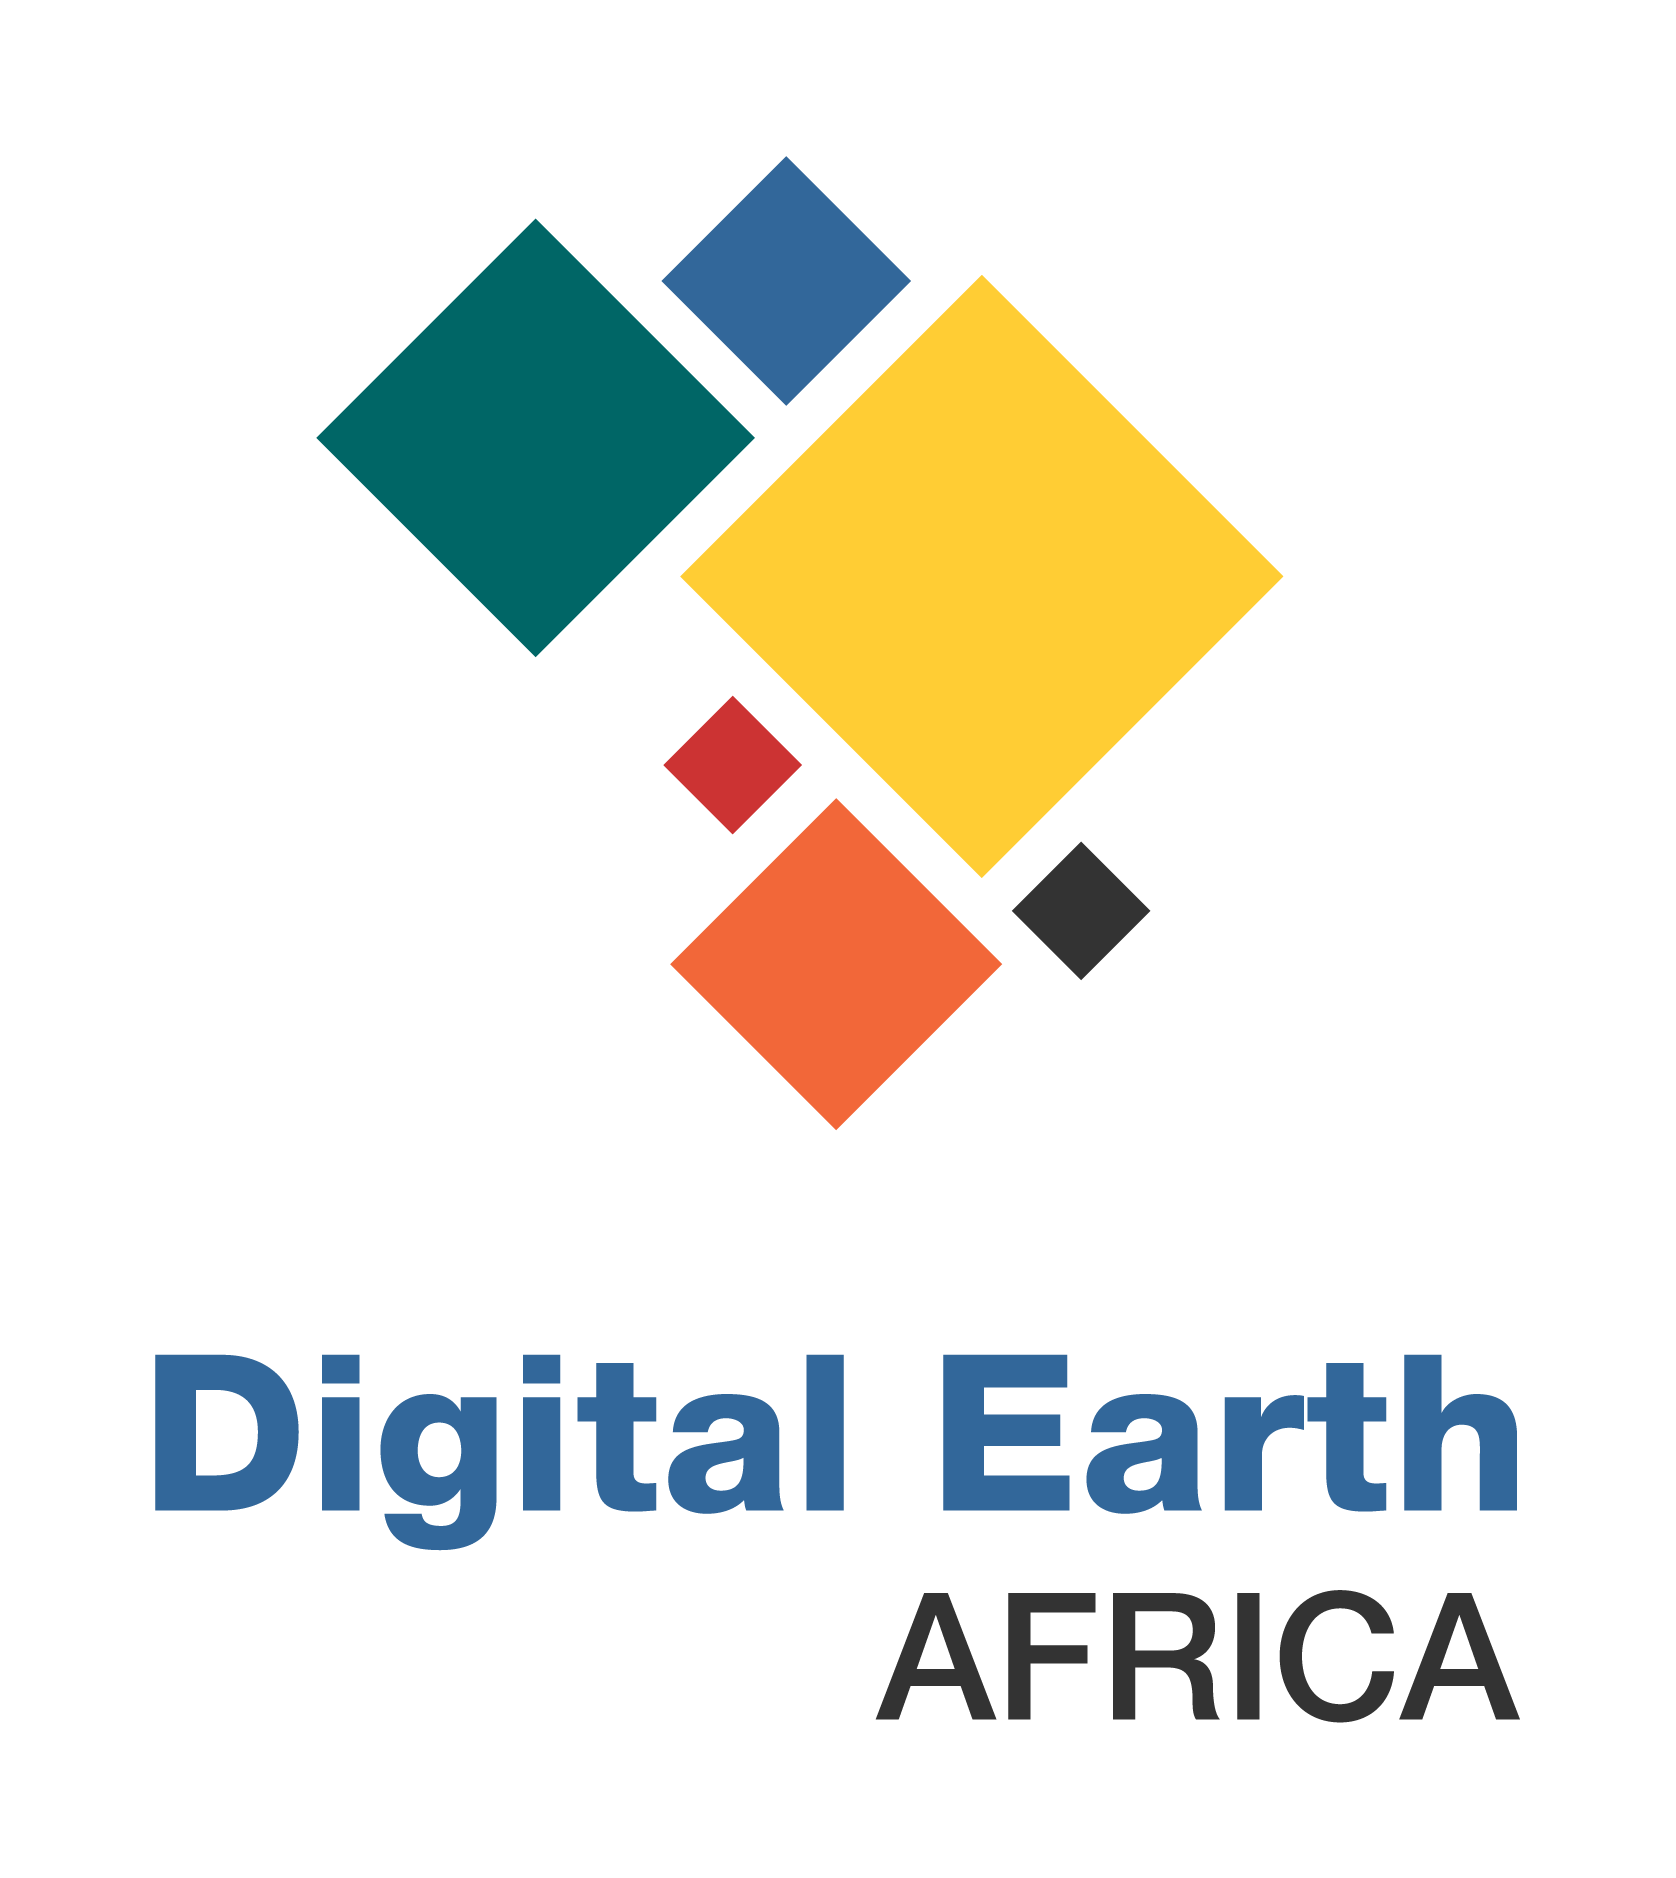 Digital Earth Africa